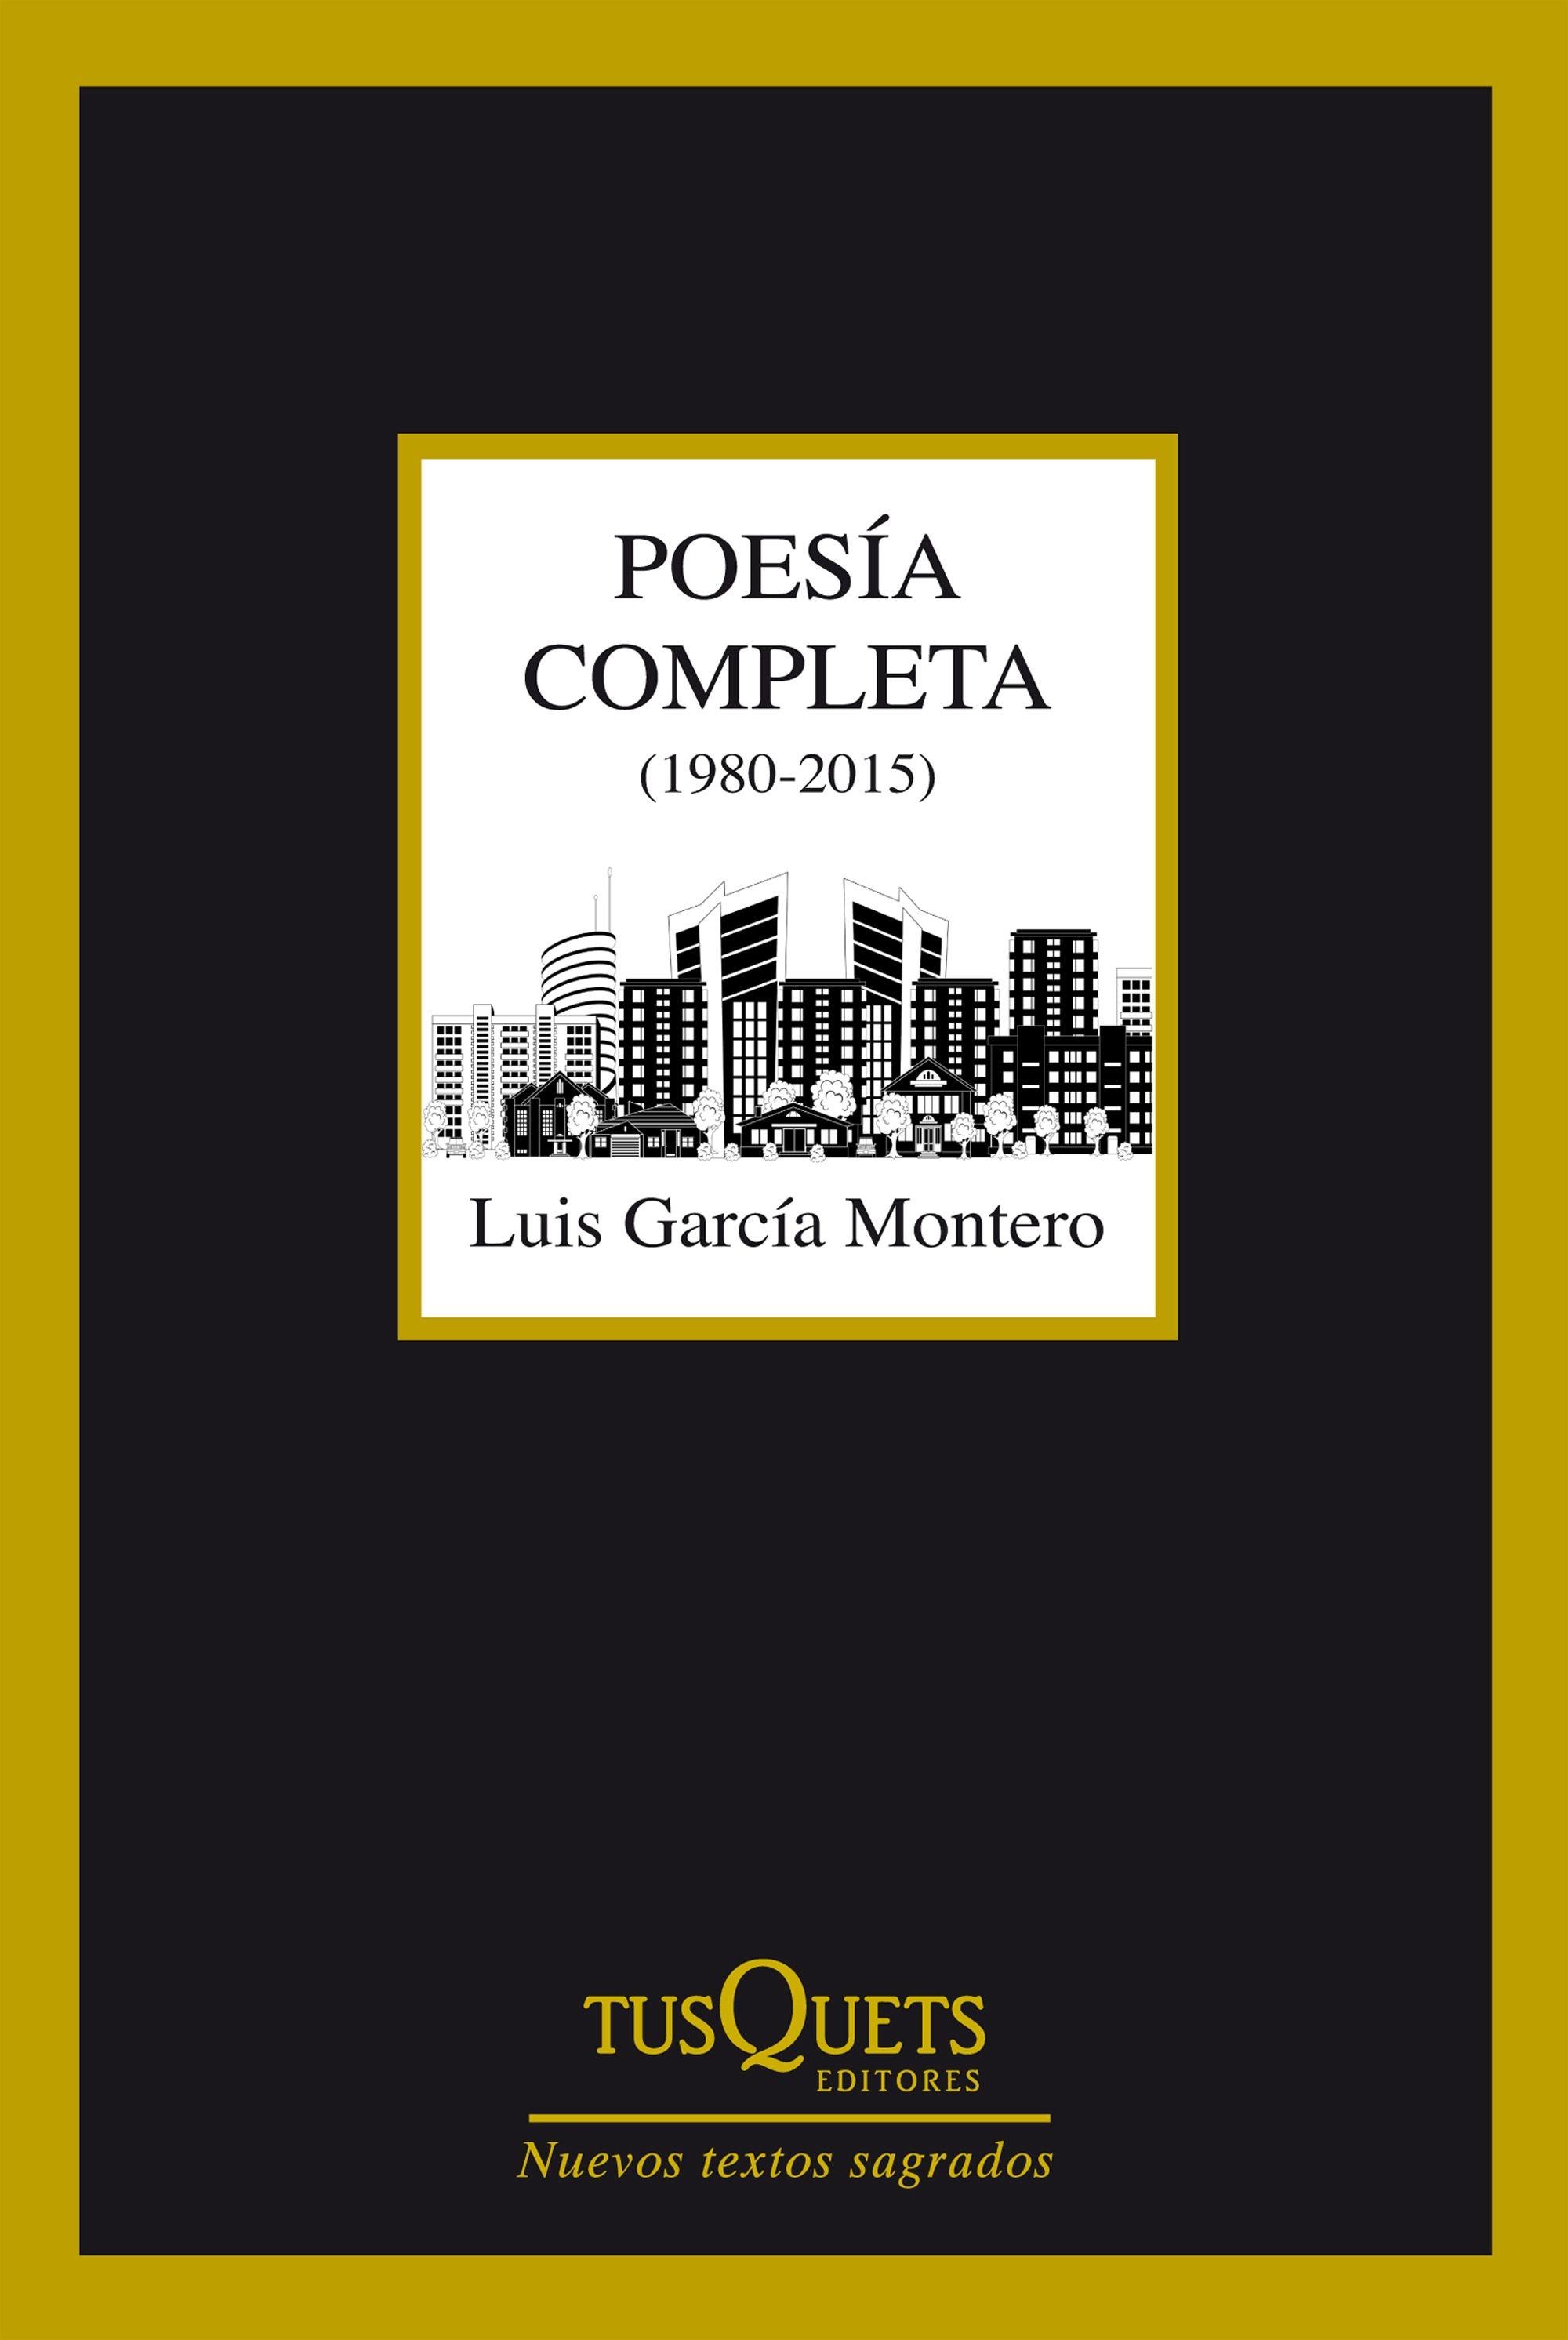 Poesía completa (1980-2015) "Luis García Montero"